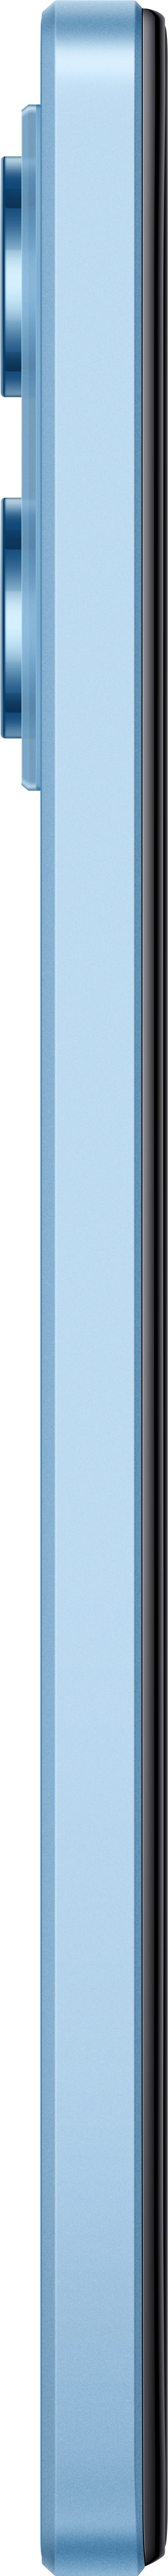 Xiaomi Redmi Note 12 Pro 5G 6/128 GB, Sky Blue